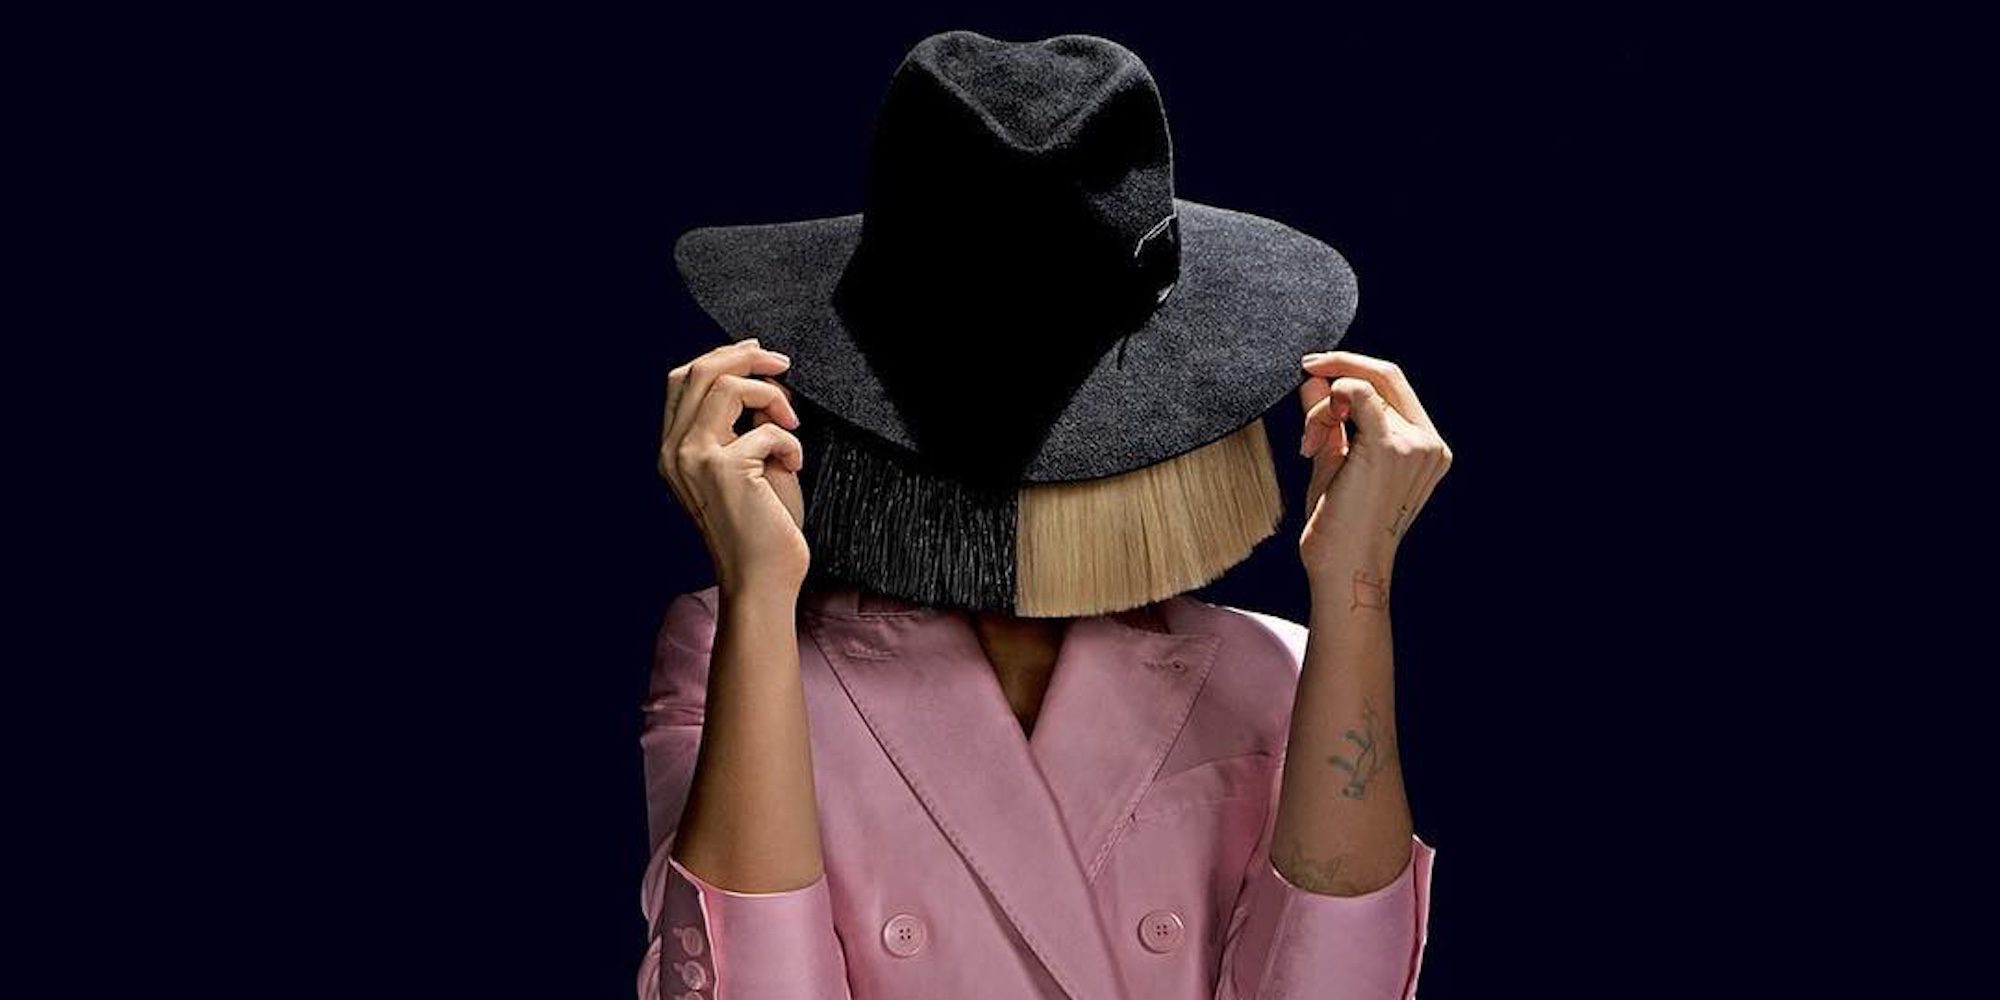 Sia publica una imagen completamente desnuda para evitar que un paparazzi la venda